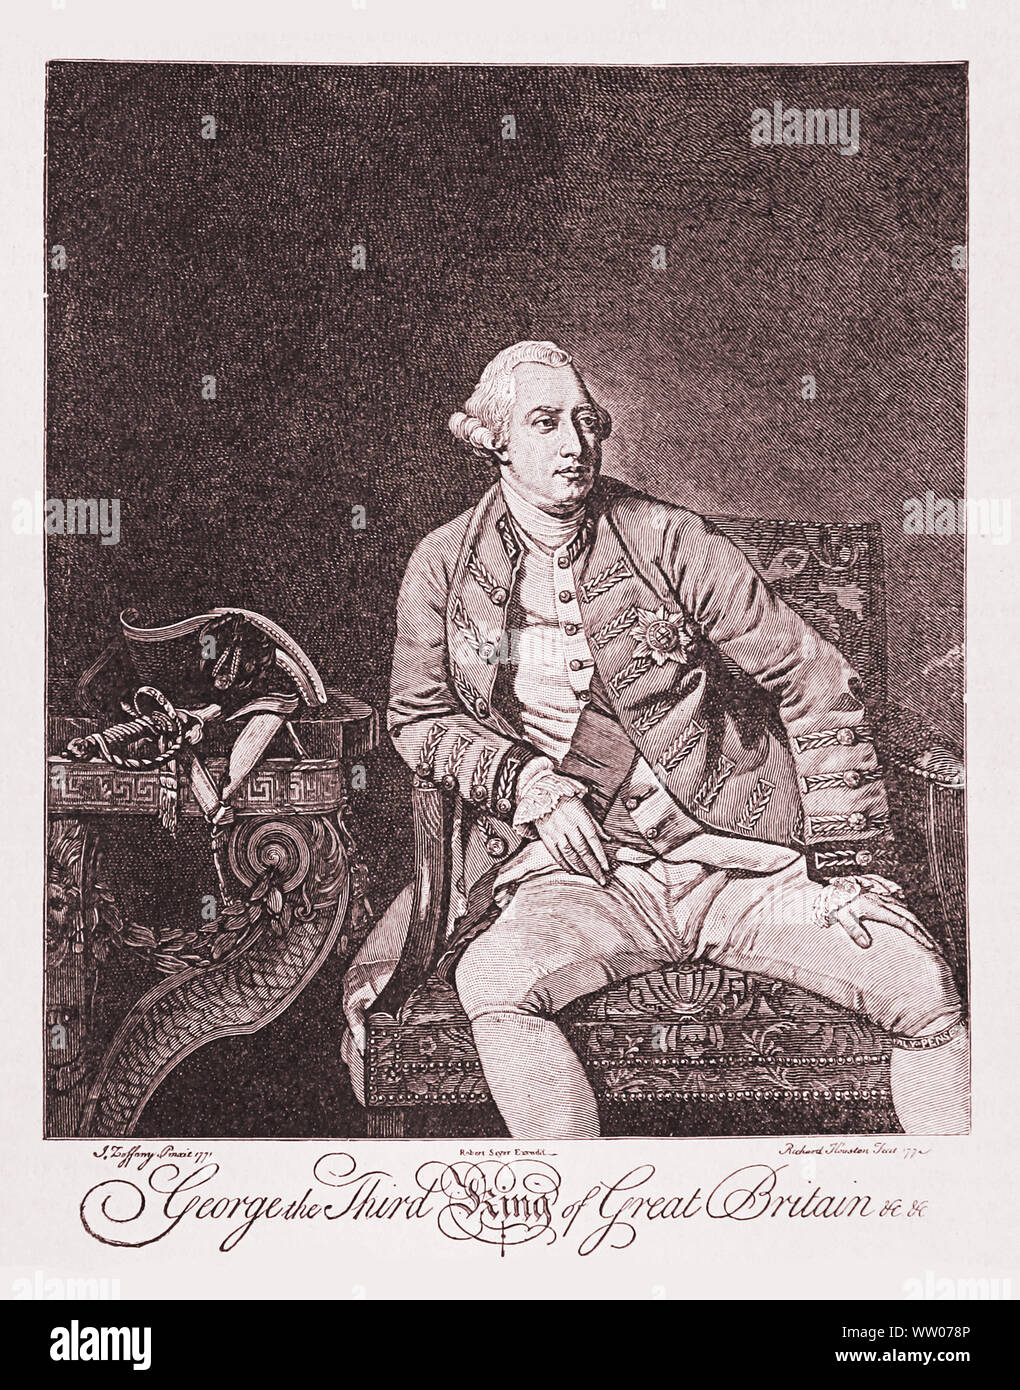 Giorgio III del Regno Unito (1738 - 1820) il terzo monarca britannico della casa di Hannover, sotto il suo regno Napoleone fu sconfitta nella battaglia di Waterloo Foto Stock